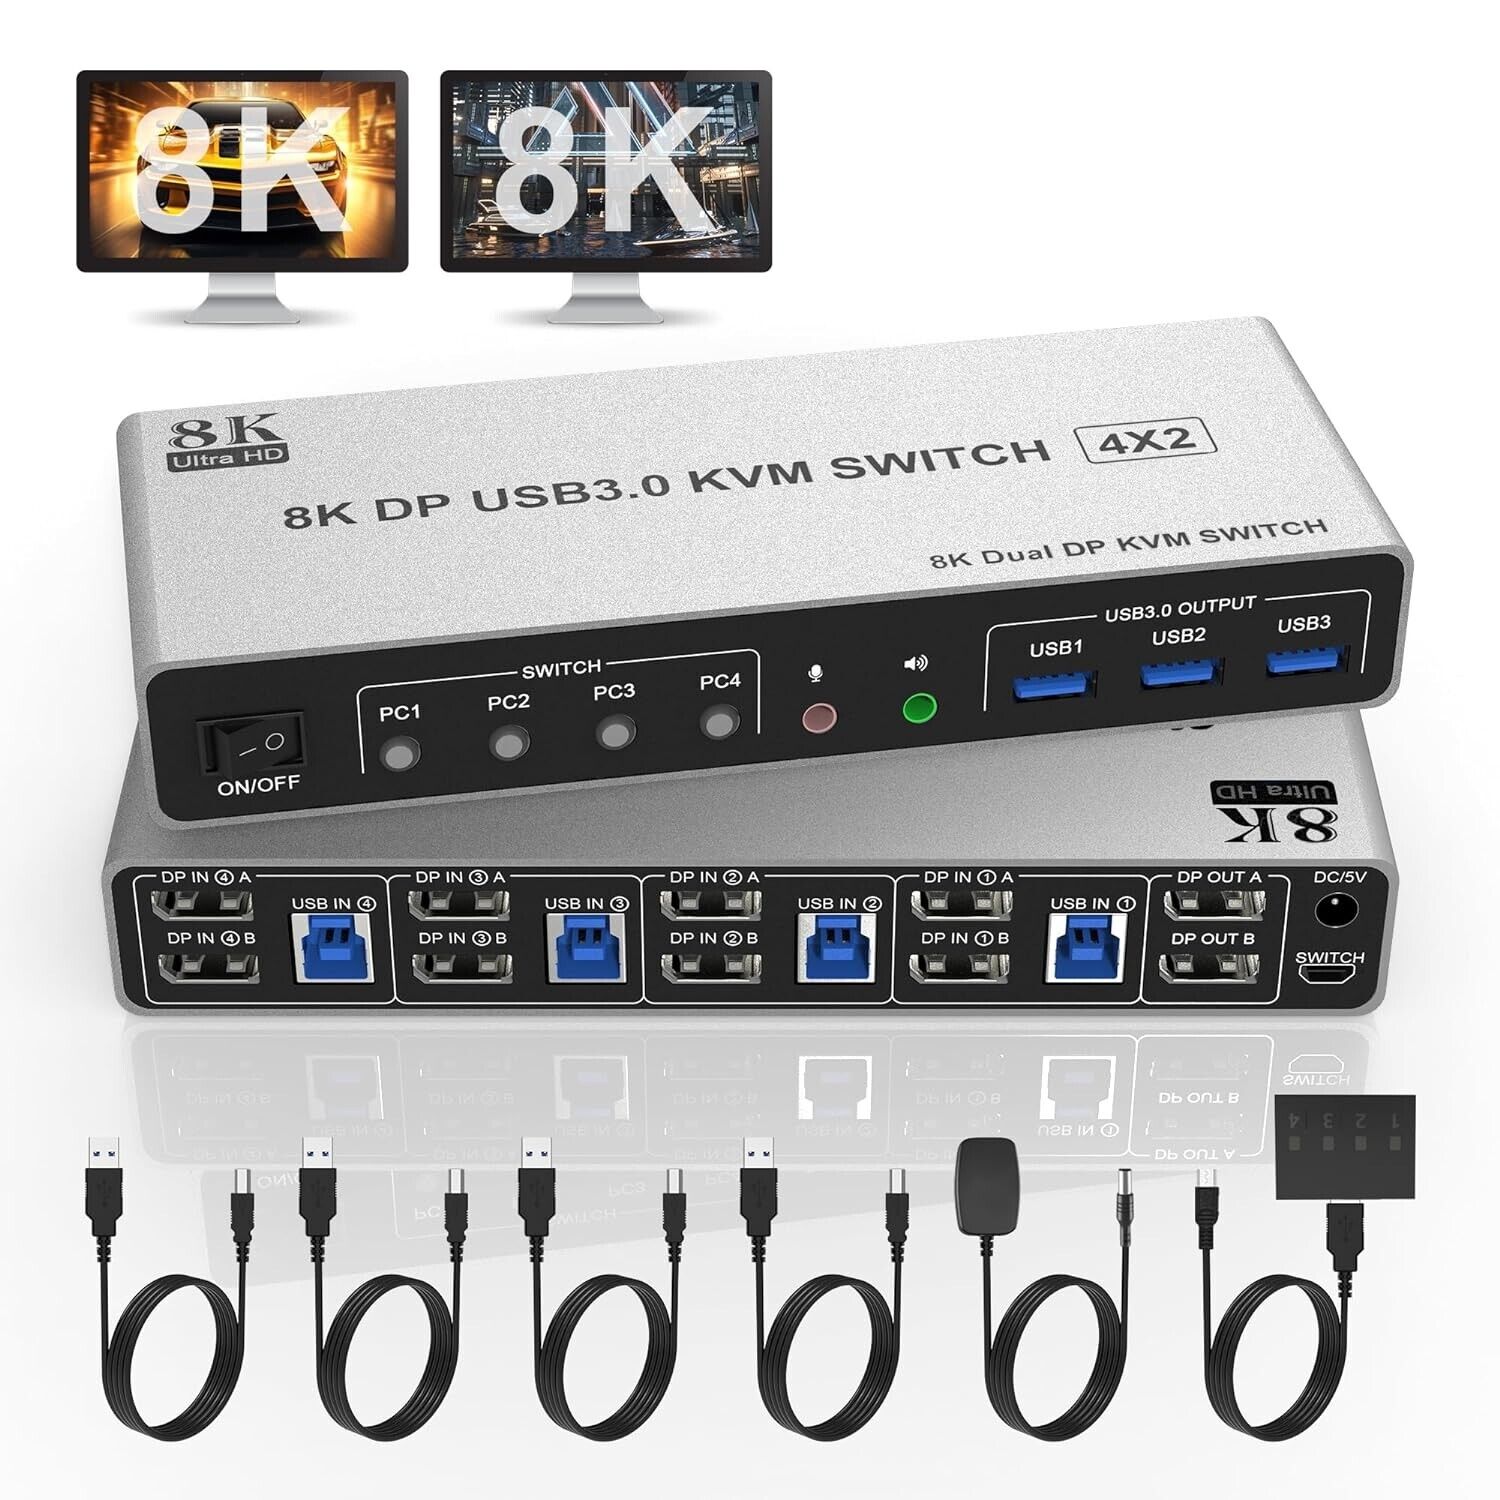 8K@60Hz 2 Displayport USB 3.0 KVM Switch 2 Monitors 4 Computers, Audio - NIB